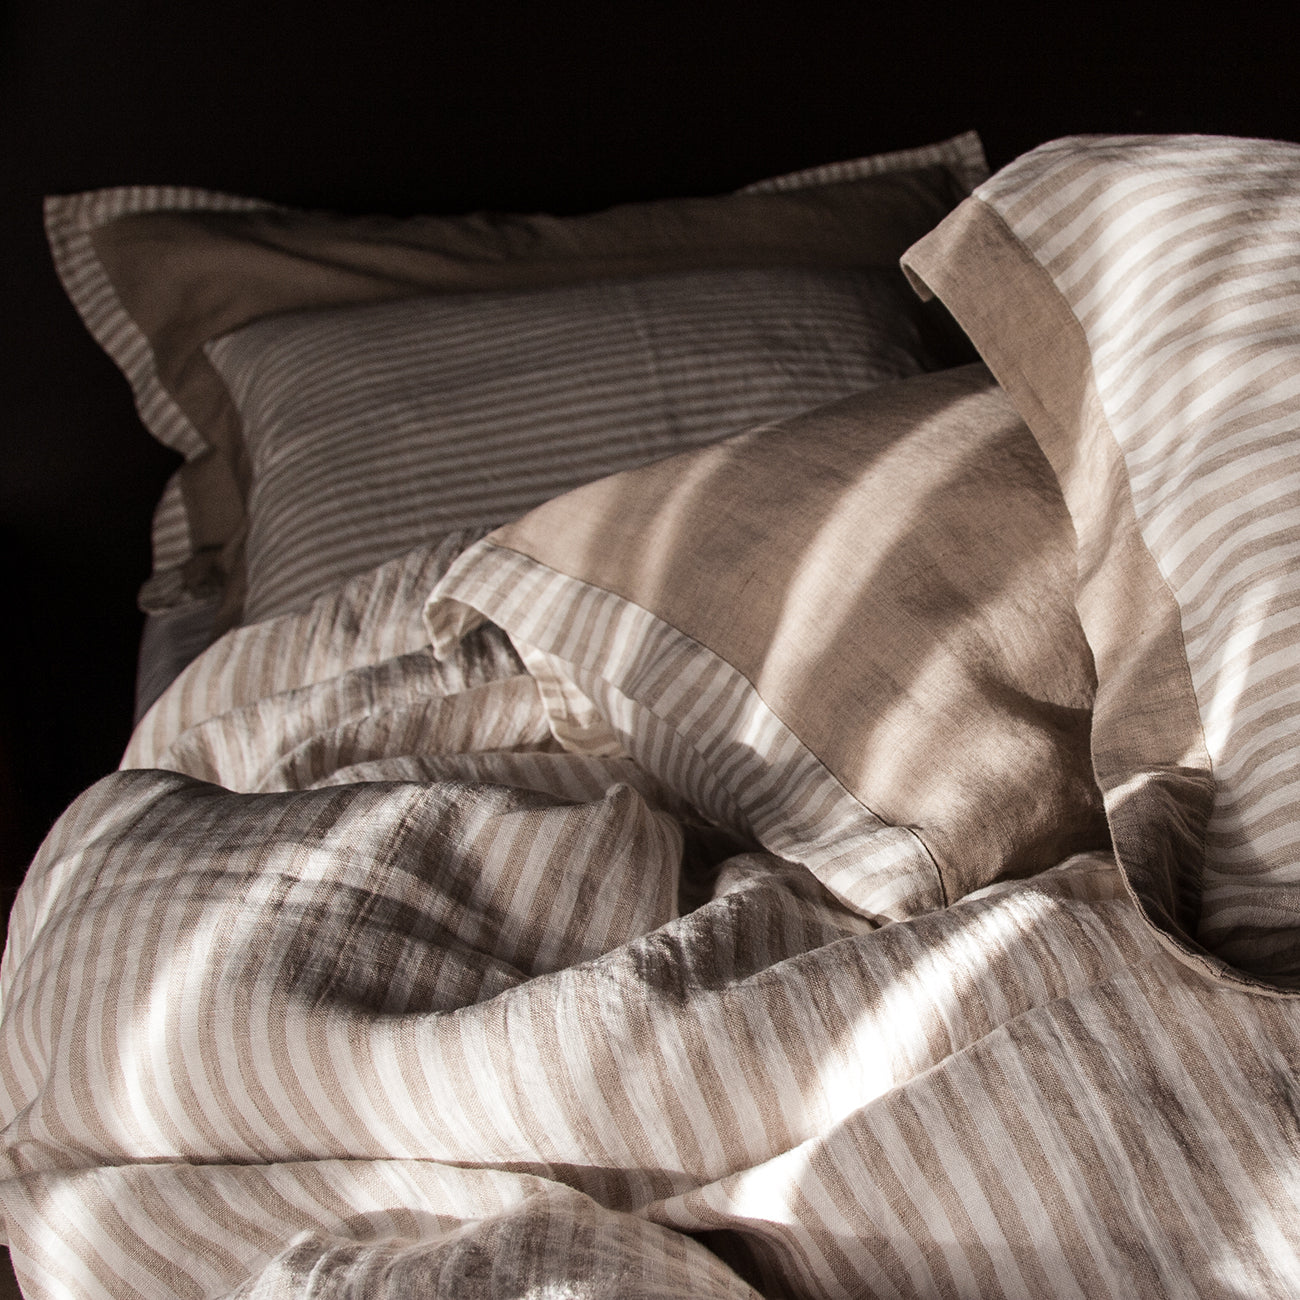 Detalle de sábanas rayadas de lino natural y blanco roto.